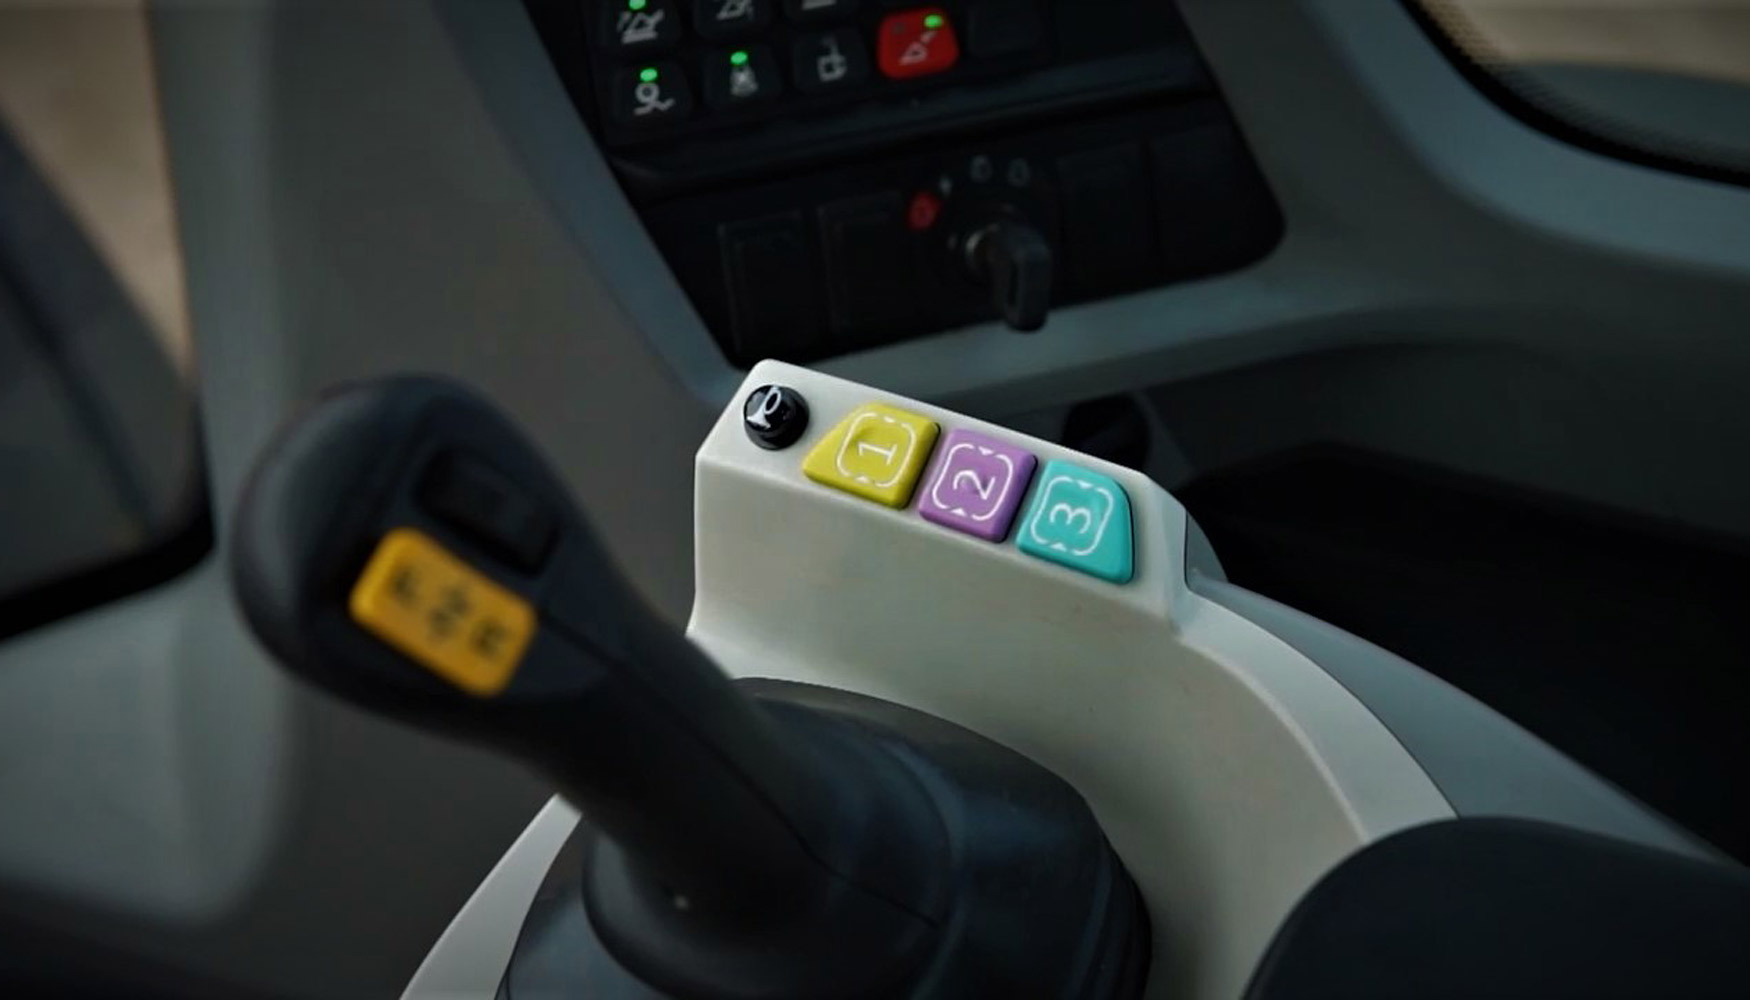 CASE ha aadido tres nuevos botones configurables con cdigos de color en el reposabrazo derecho que permiten al operador reaccionar rpidamente...